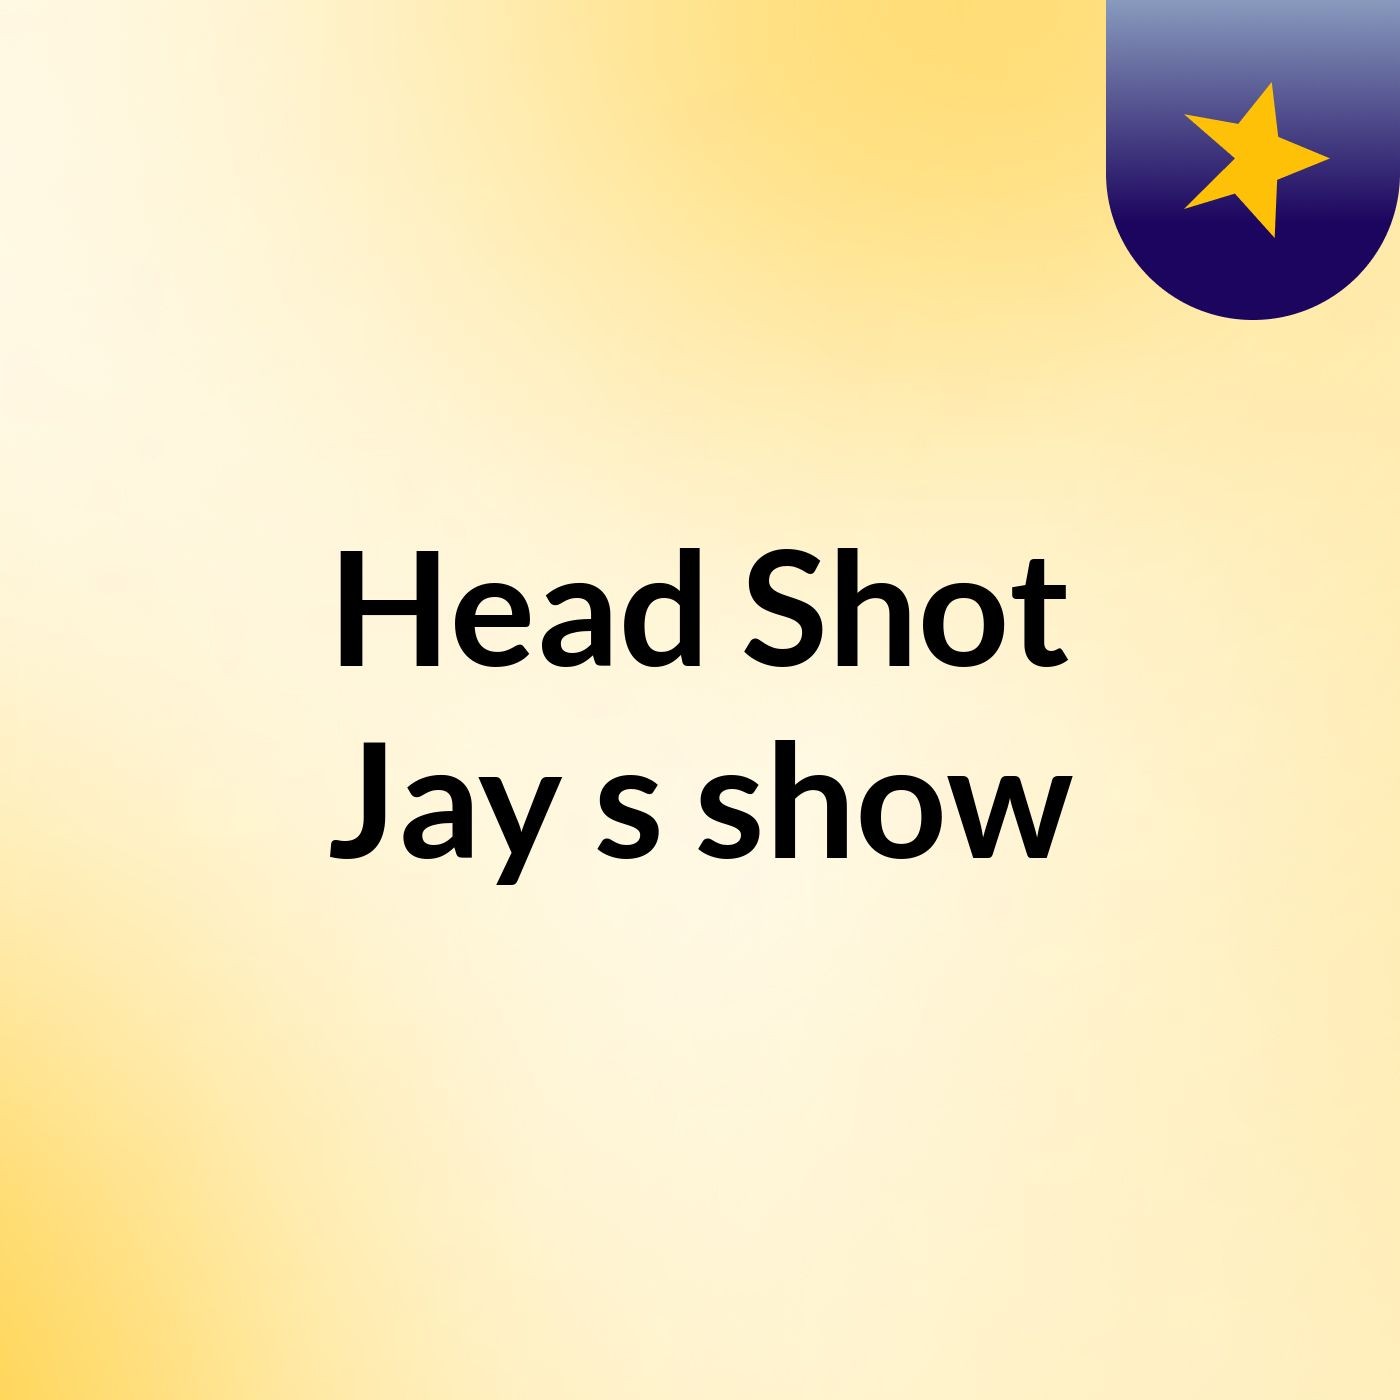 Head Shot Jay's show